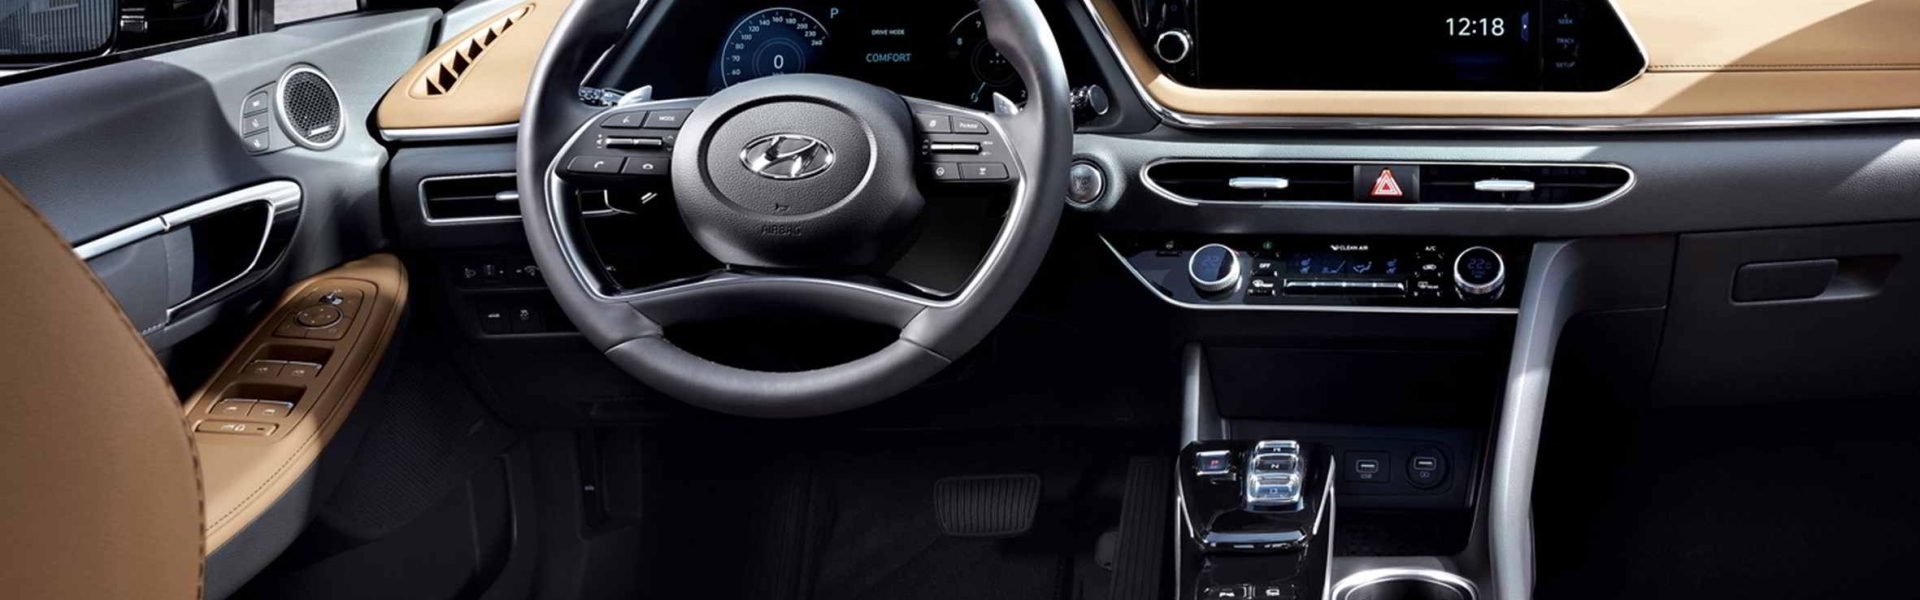 Sedán «5 estrellas»: El Hyundai Sonata puede adquirirse con financiamiento en Venezuela